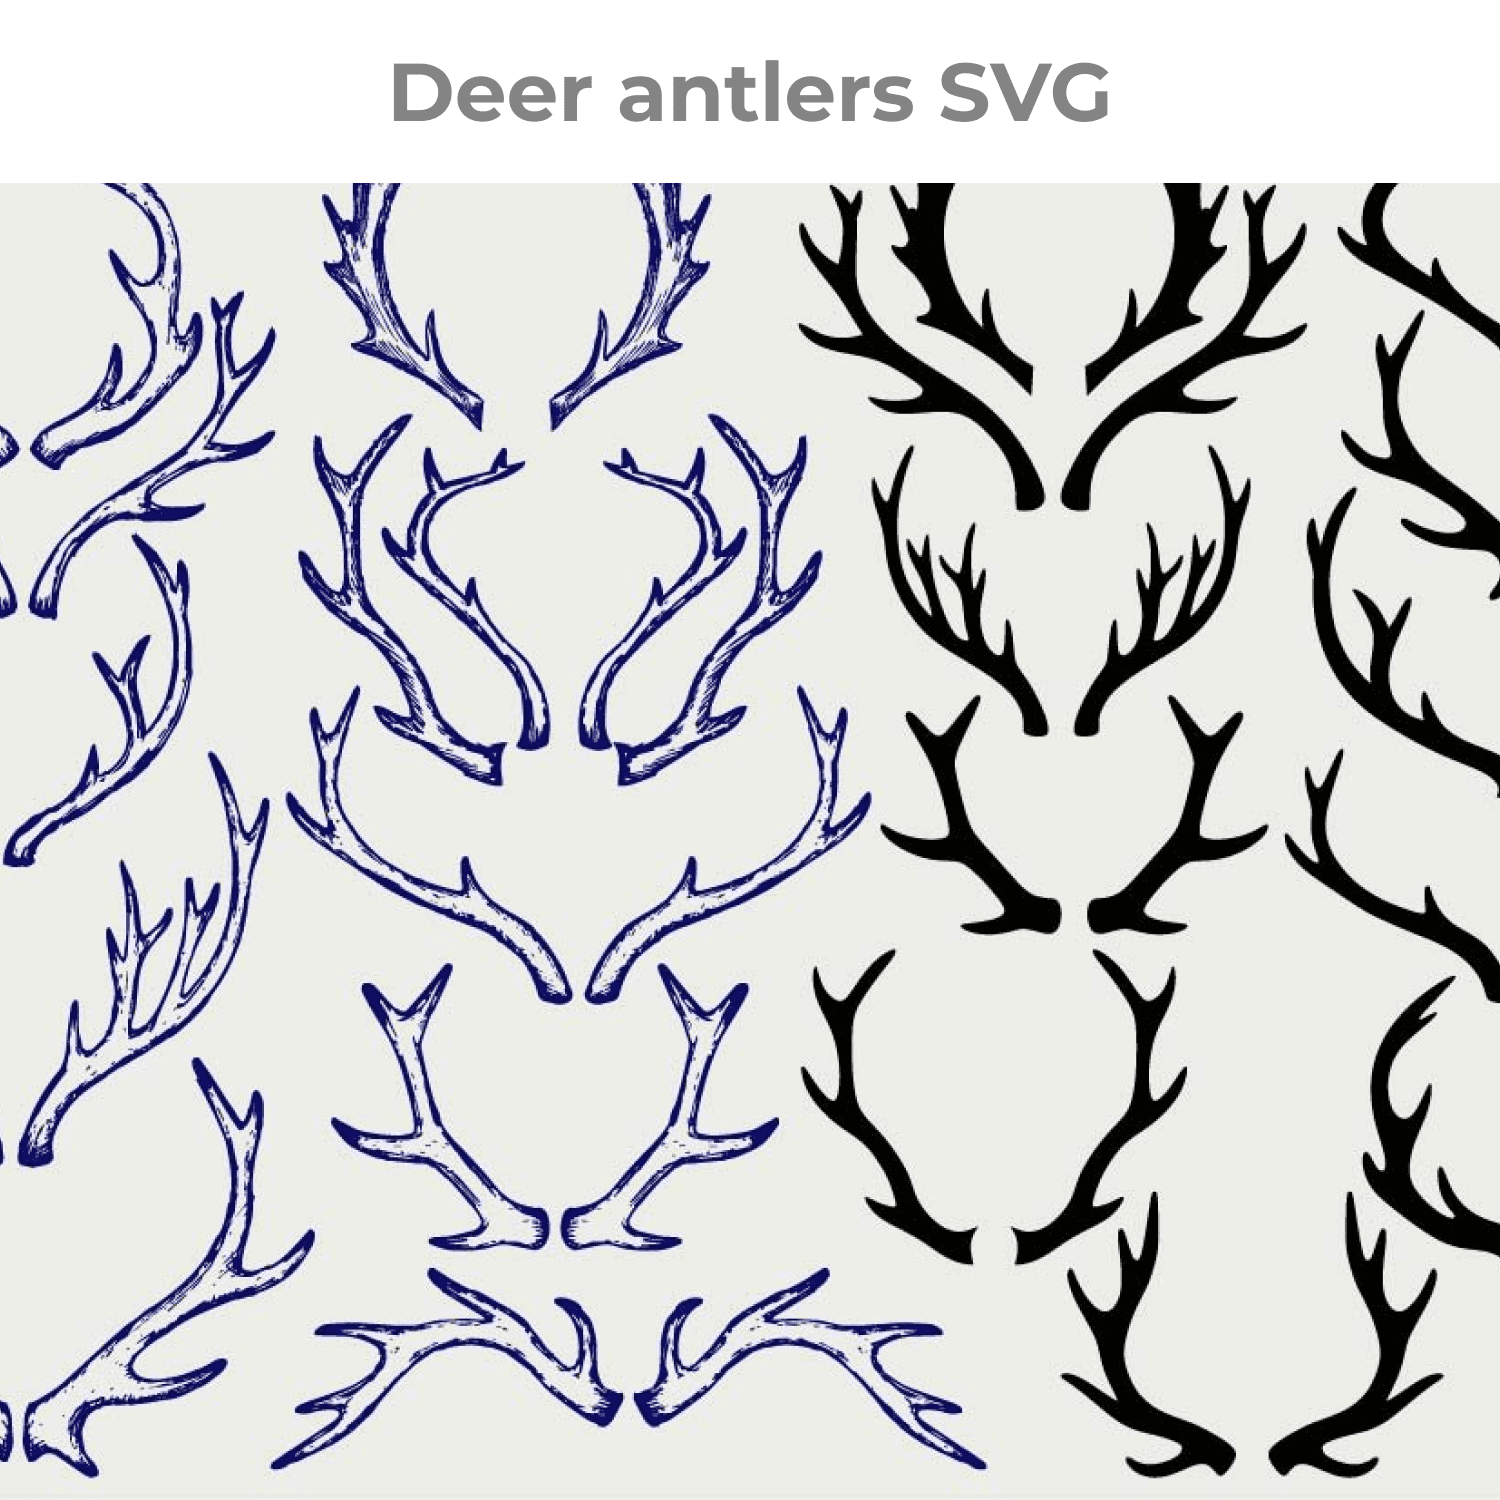 Deer antlers SVG main cover.